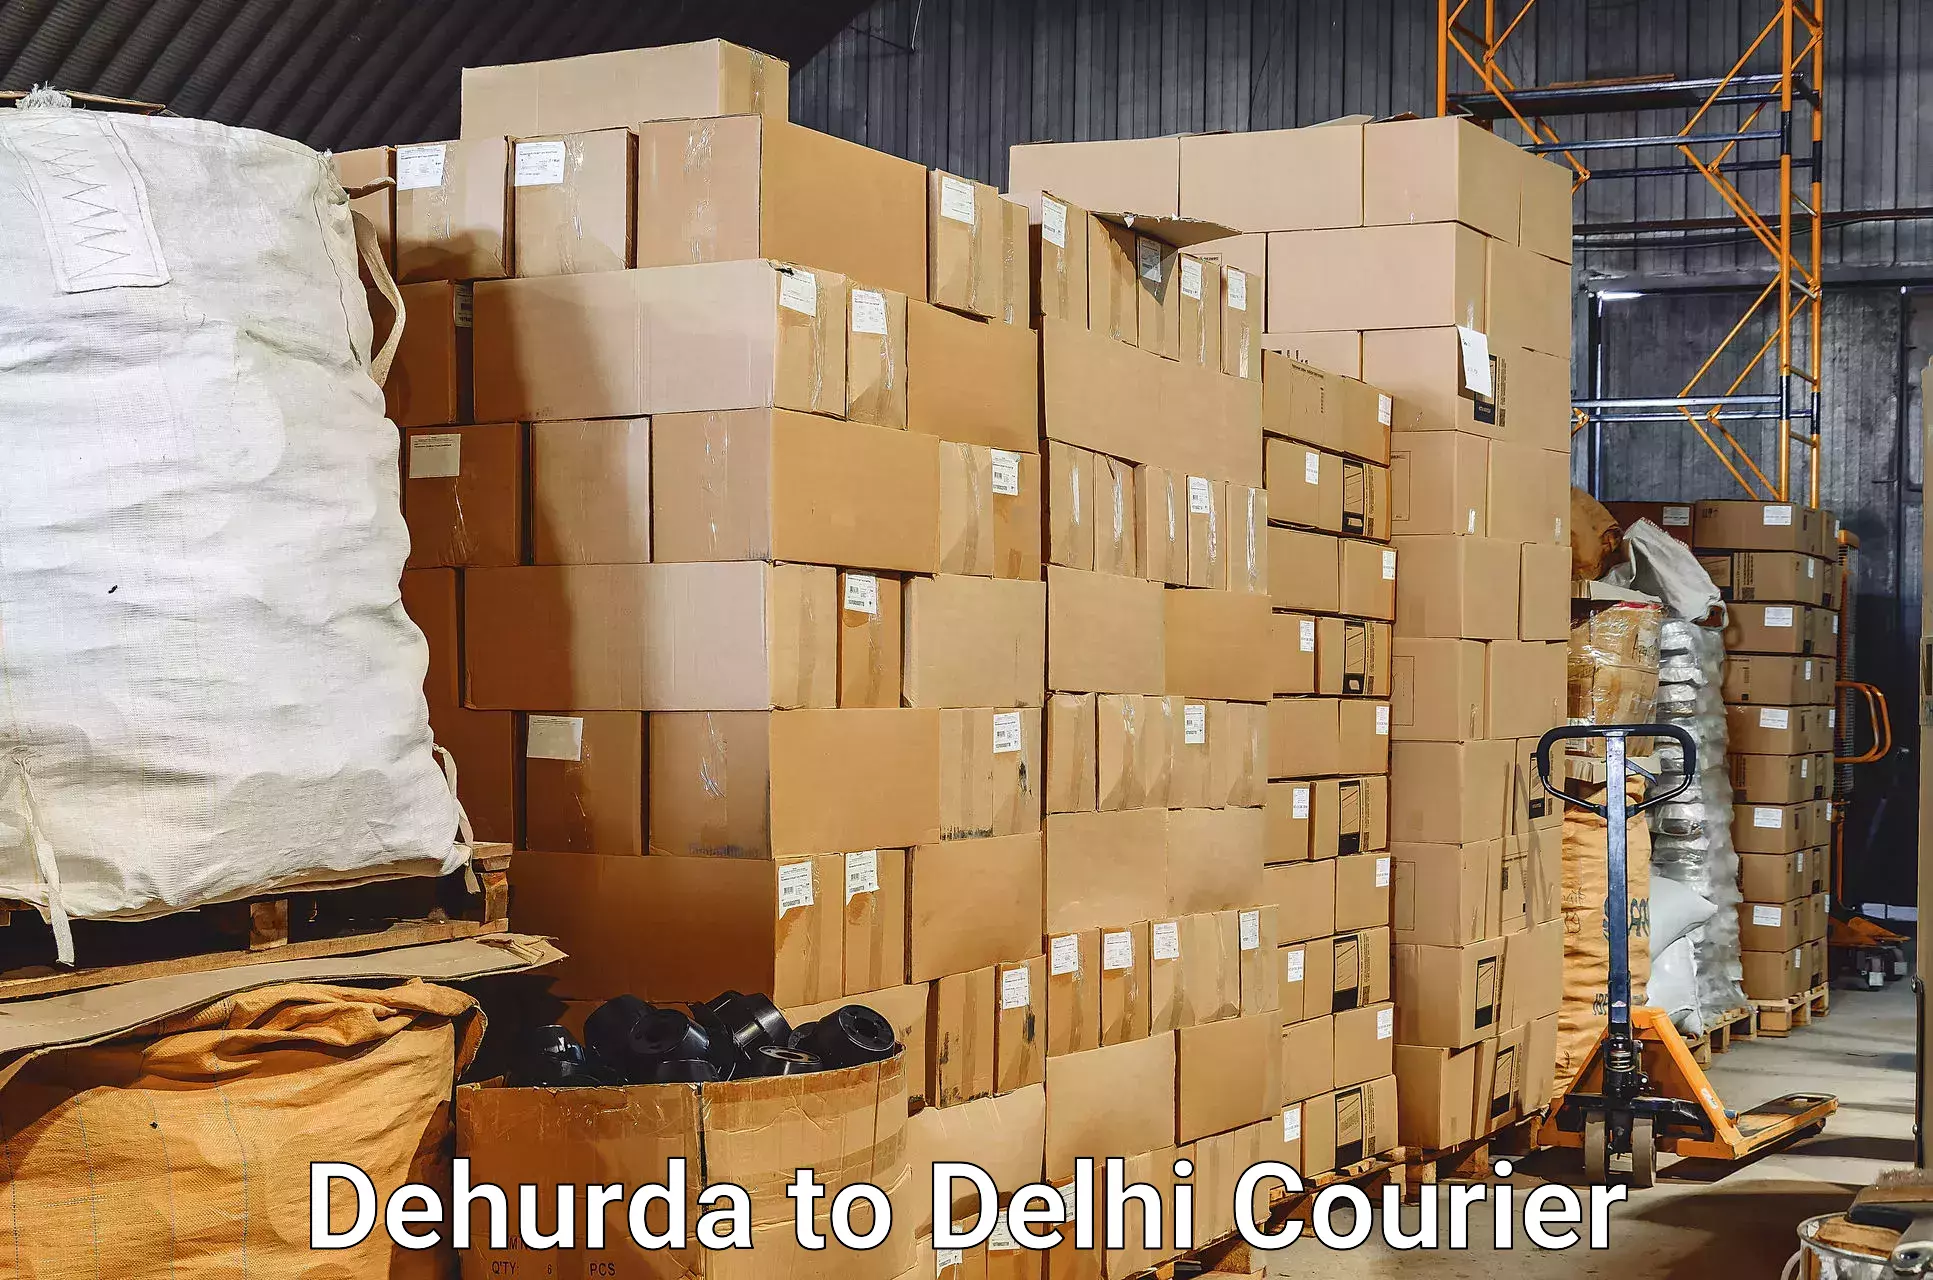 Hassle-free luggage shipping in Dehurda to Sarojini Nagar